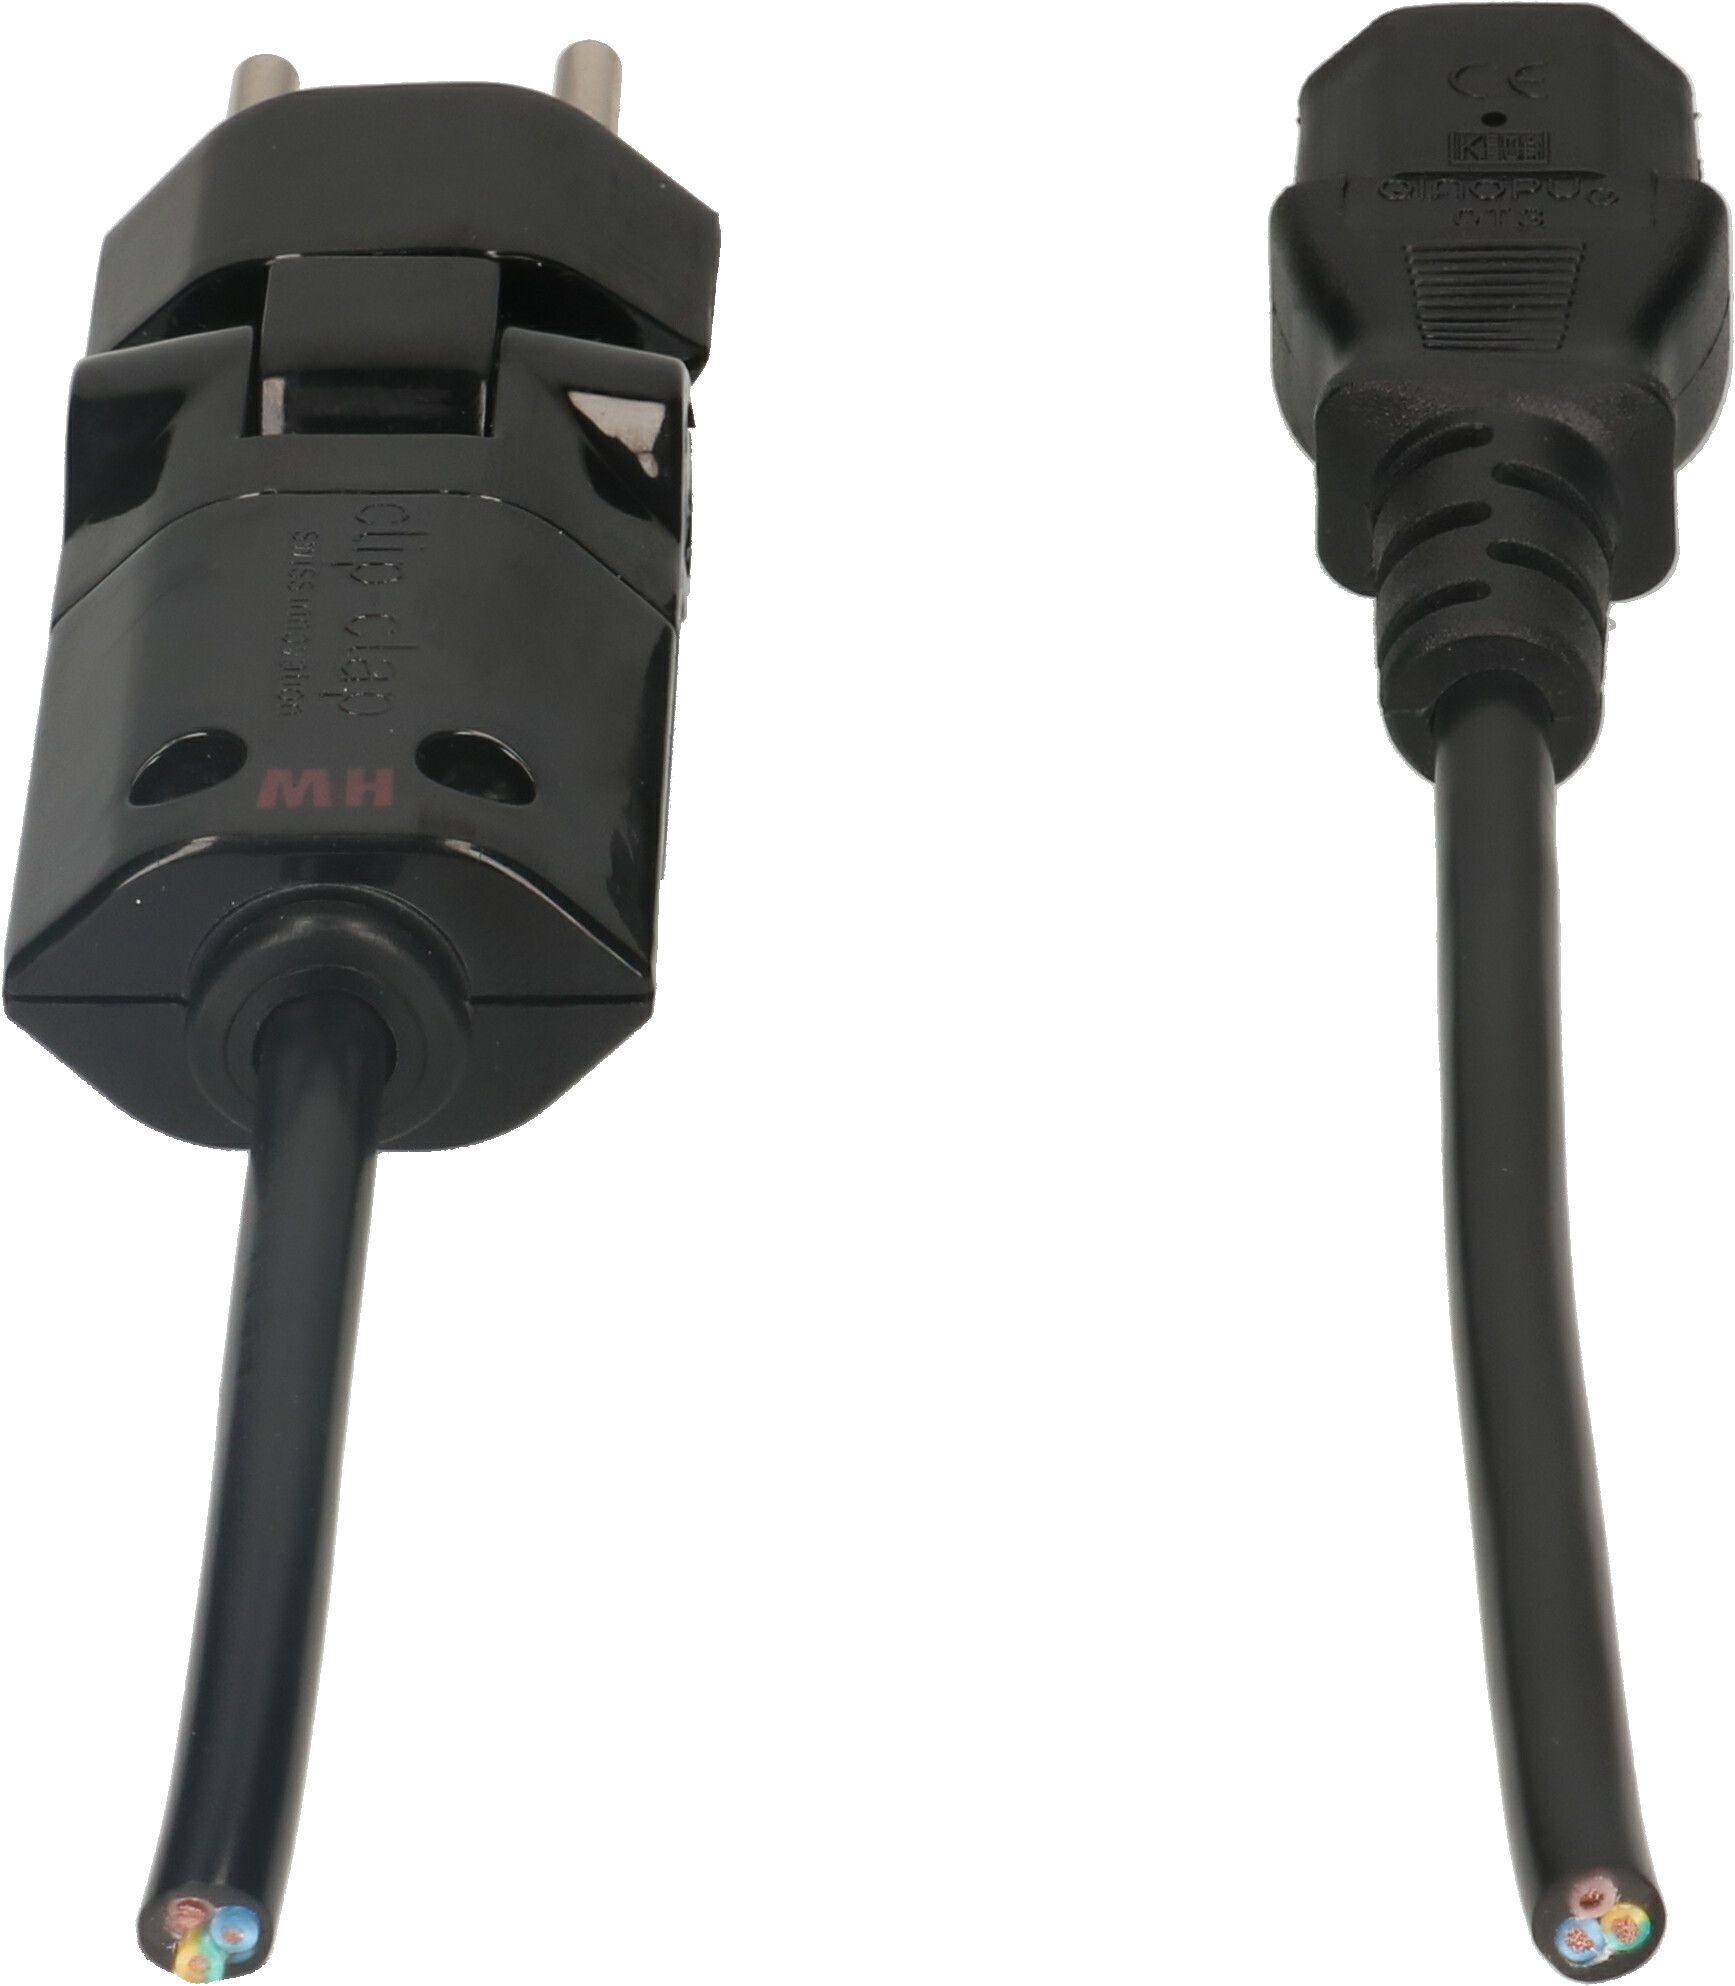 Cable cordset H05VV-F3G0.75mm2 black